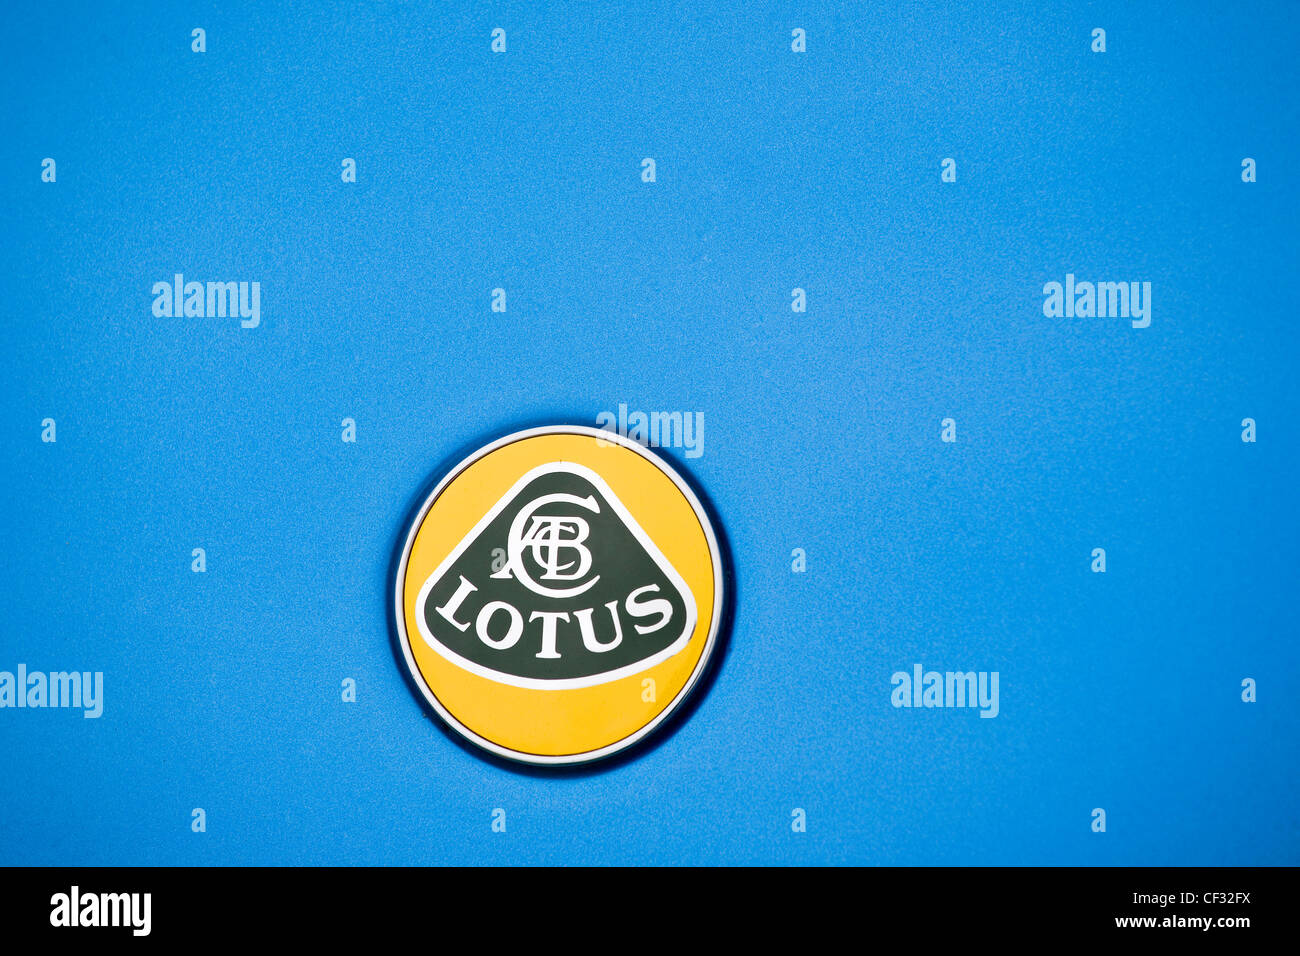 Une voiture, une Lotus badge presitigious de marque au monde de voitures de sport. Banque D'Images